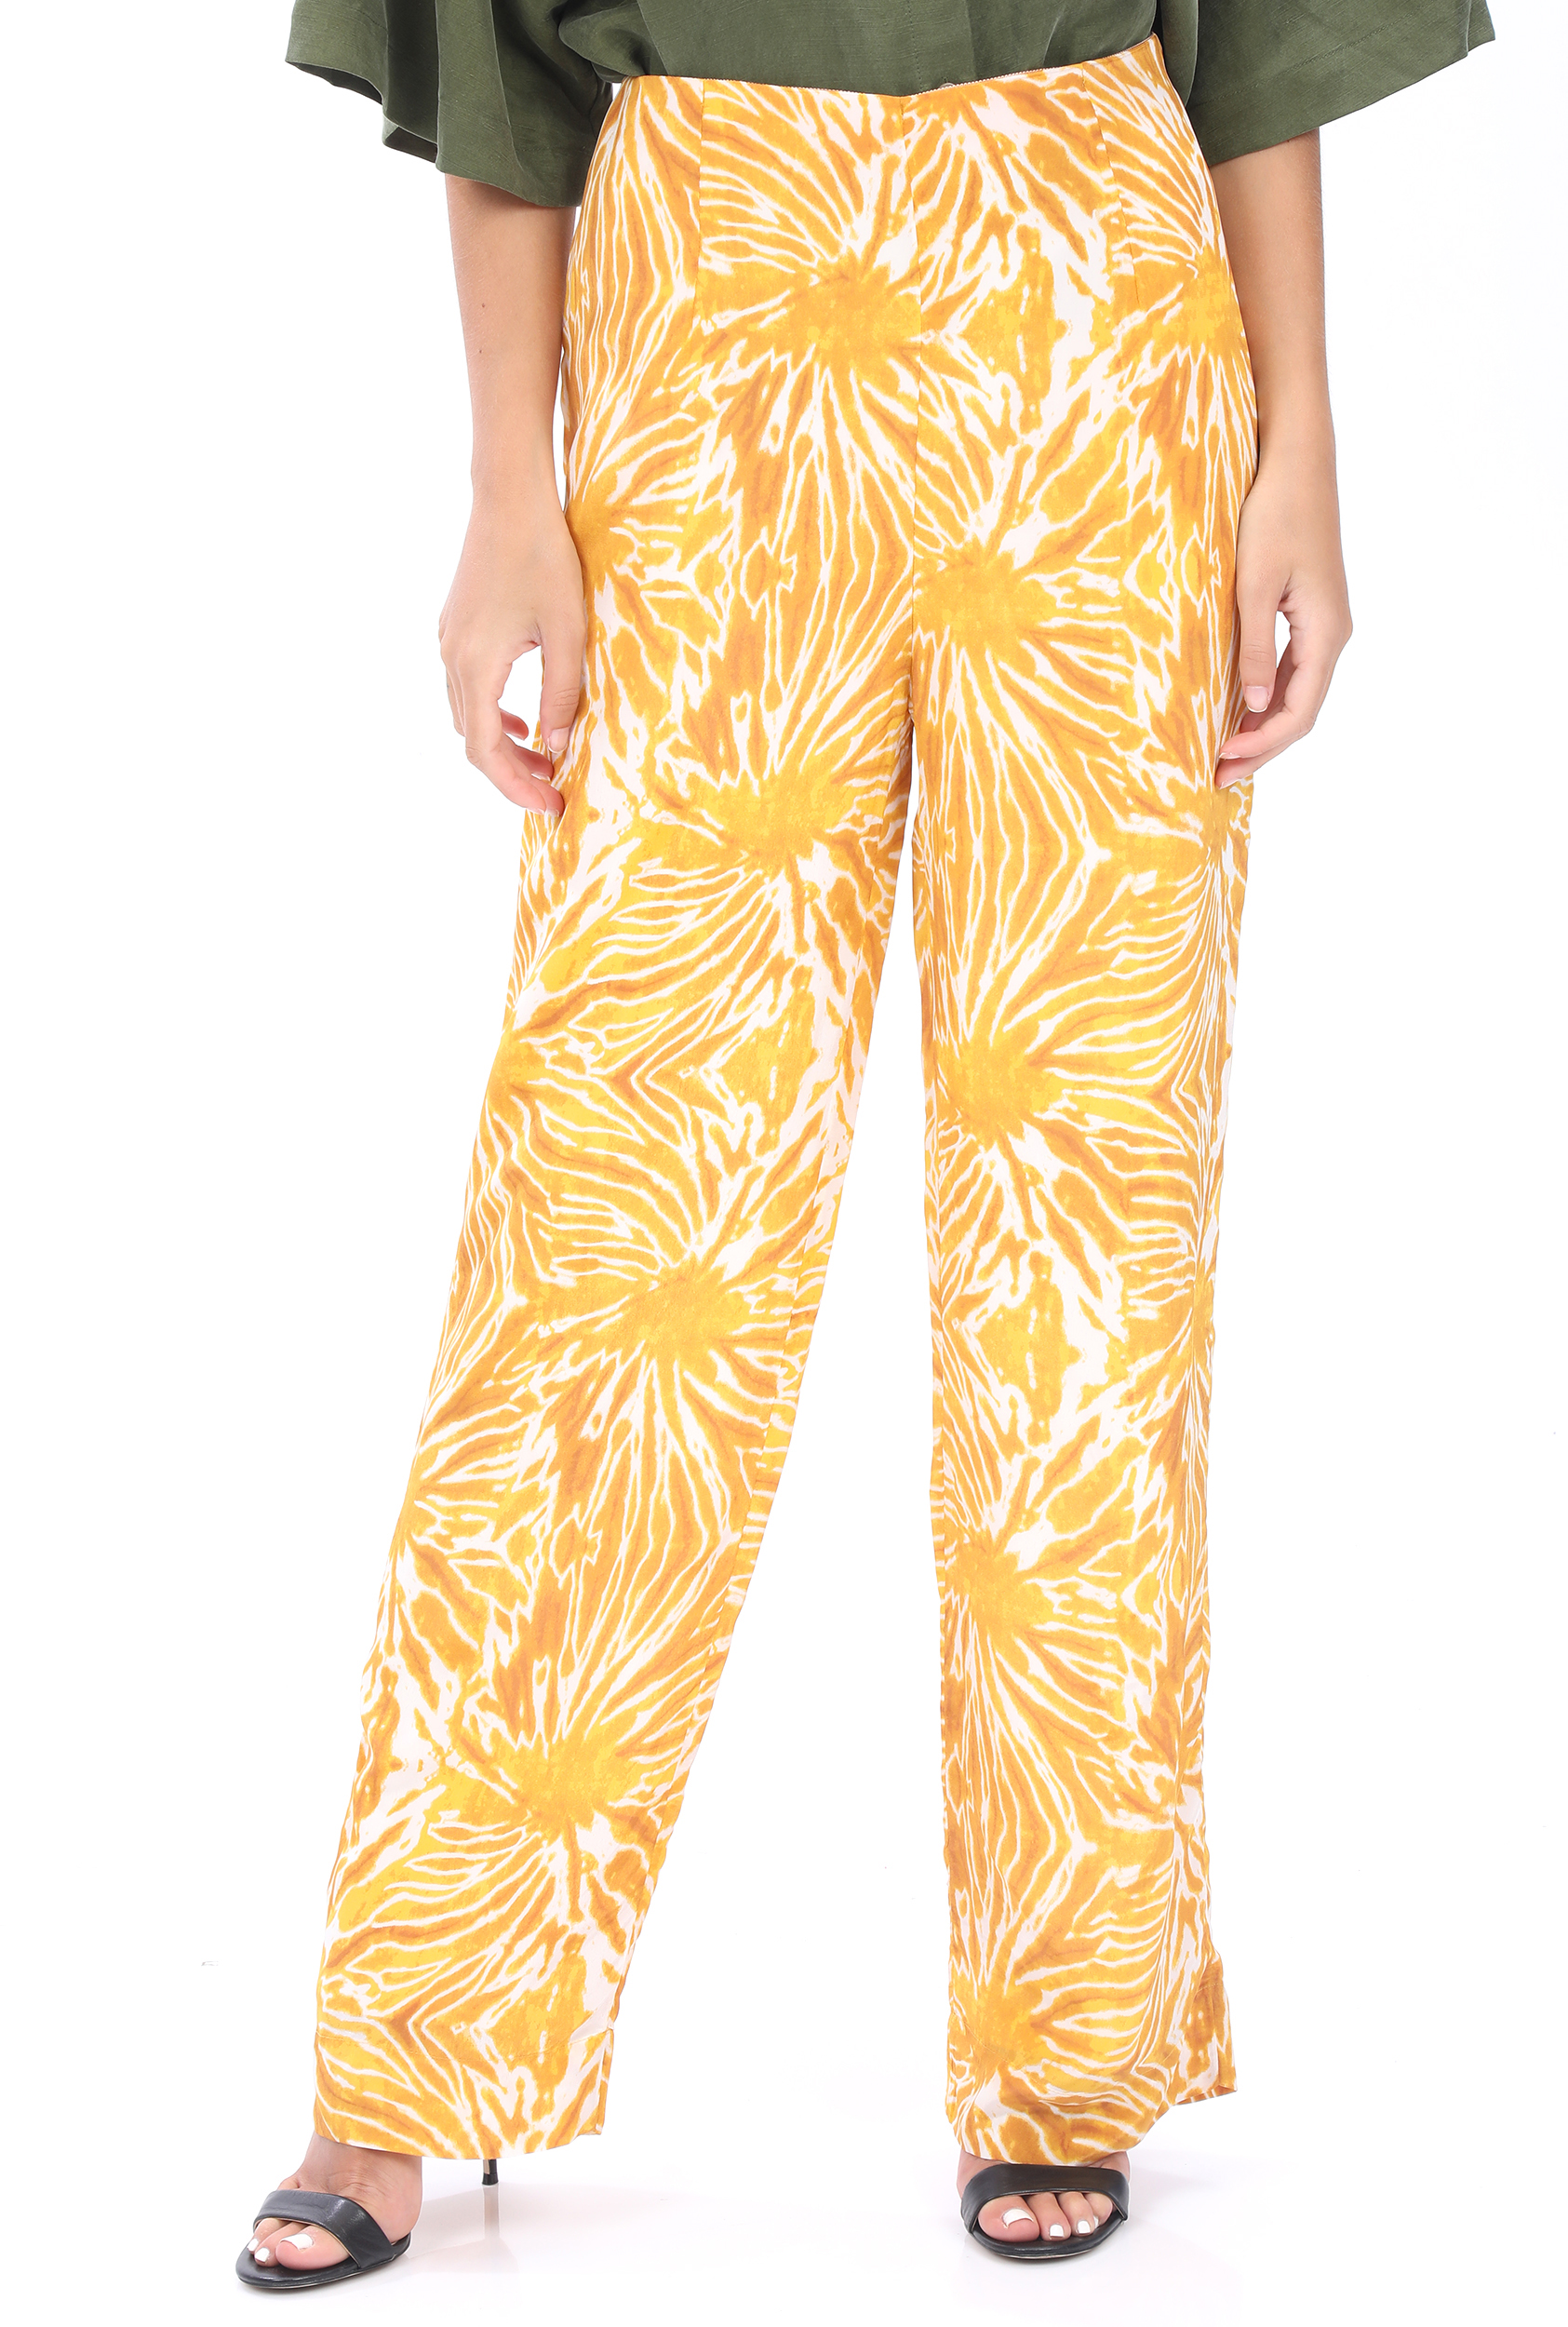 Γυναικεία/Ρούχα/Παντελόνια/Παντελόνες SCOTCH & SODA - Γυναικεία παντελόνα SCOTCH & SODA Printed tie-dye wide leg κίτρινη εκρού